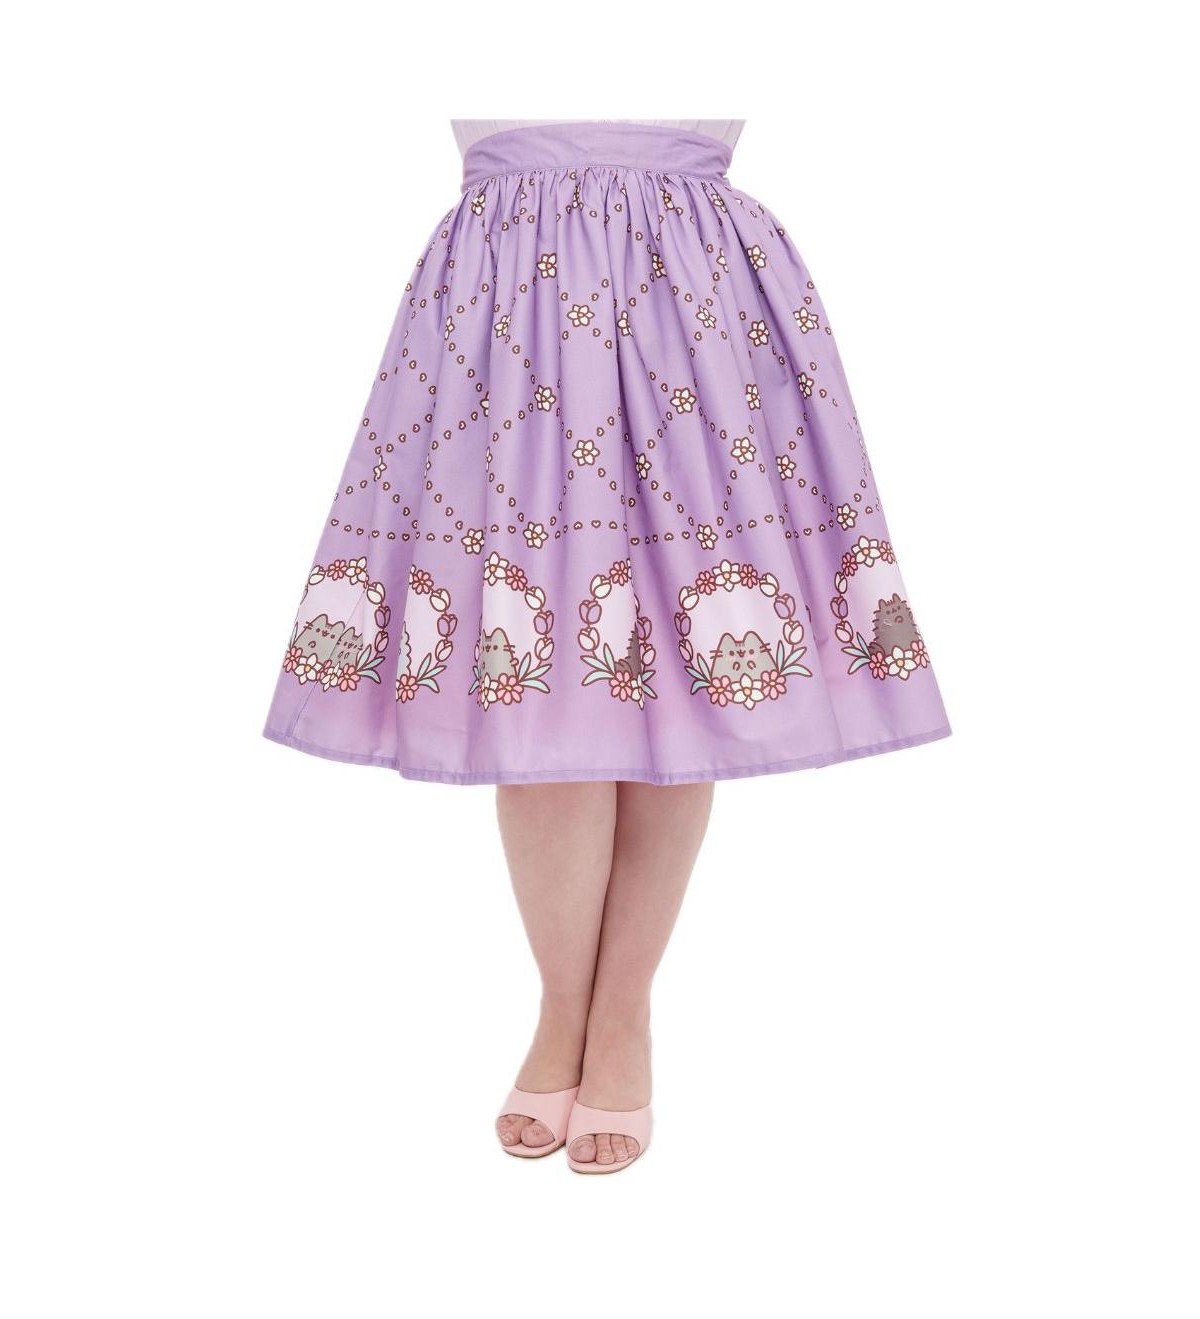 Plus Size Printed Woven Gellar Swing Skirt - Lavender pusheen floral frame print